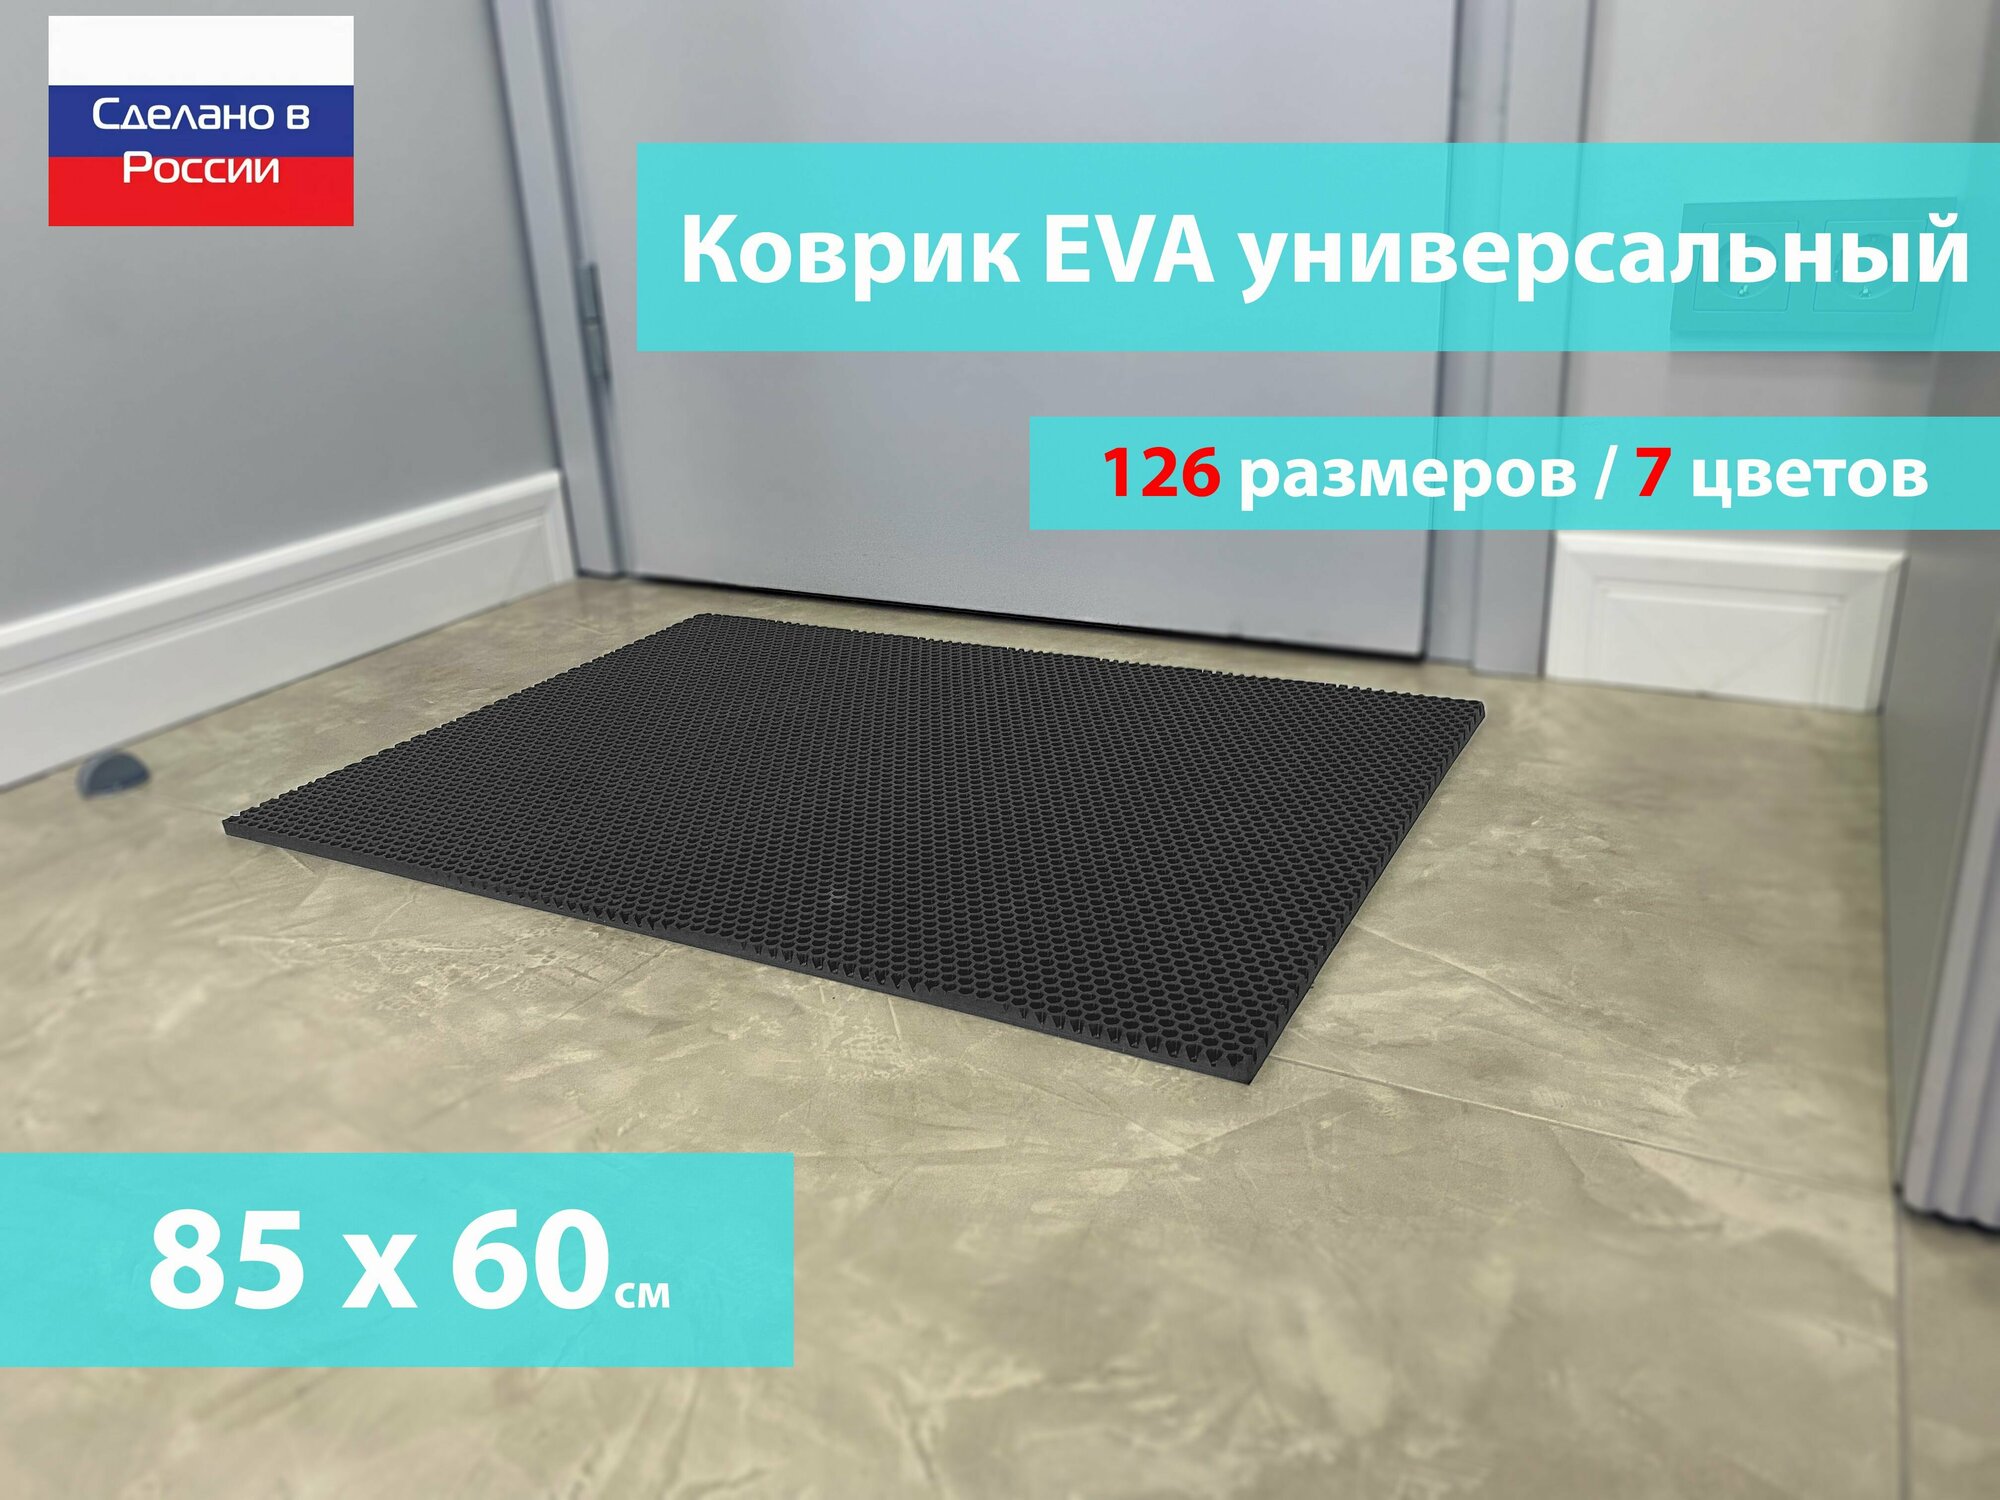 Коврик придверный EVA (ЕВА) в прихожую для обуви / Ковер ЭВА на пол перед дверью/ серый / размер 85 х 60 см